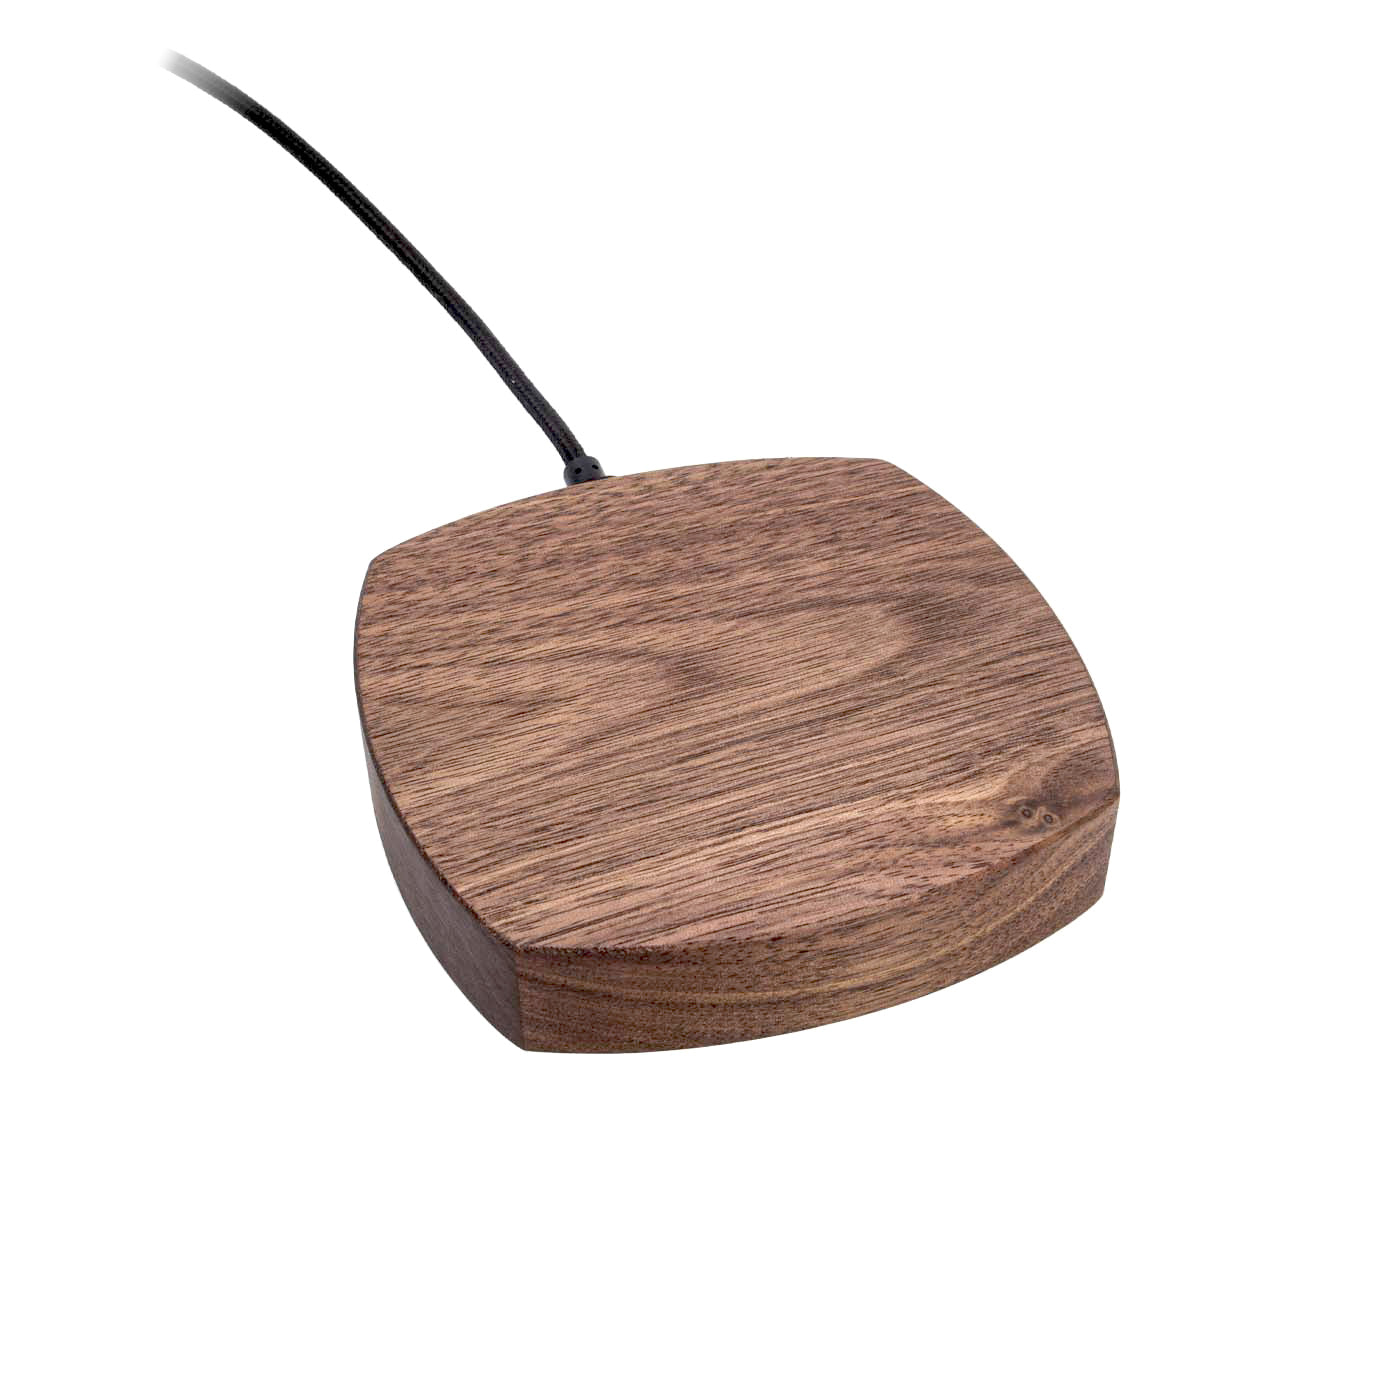 Abgerundetes kabelloses Ladegerät aus Holz, amerikanischer Nussbaum